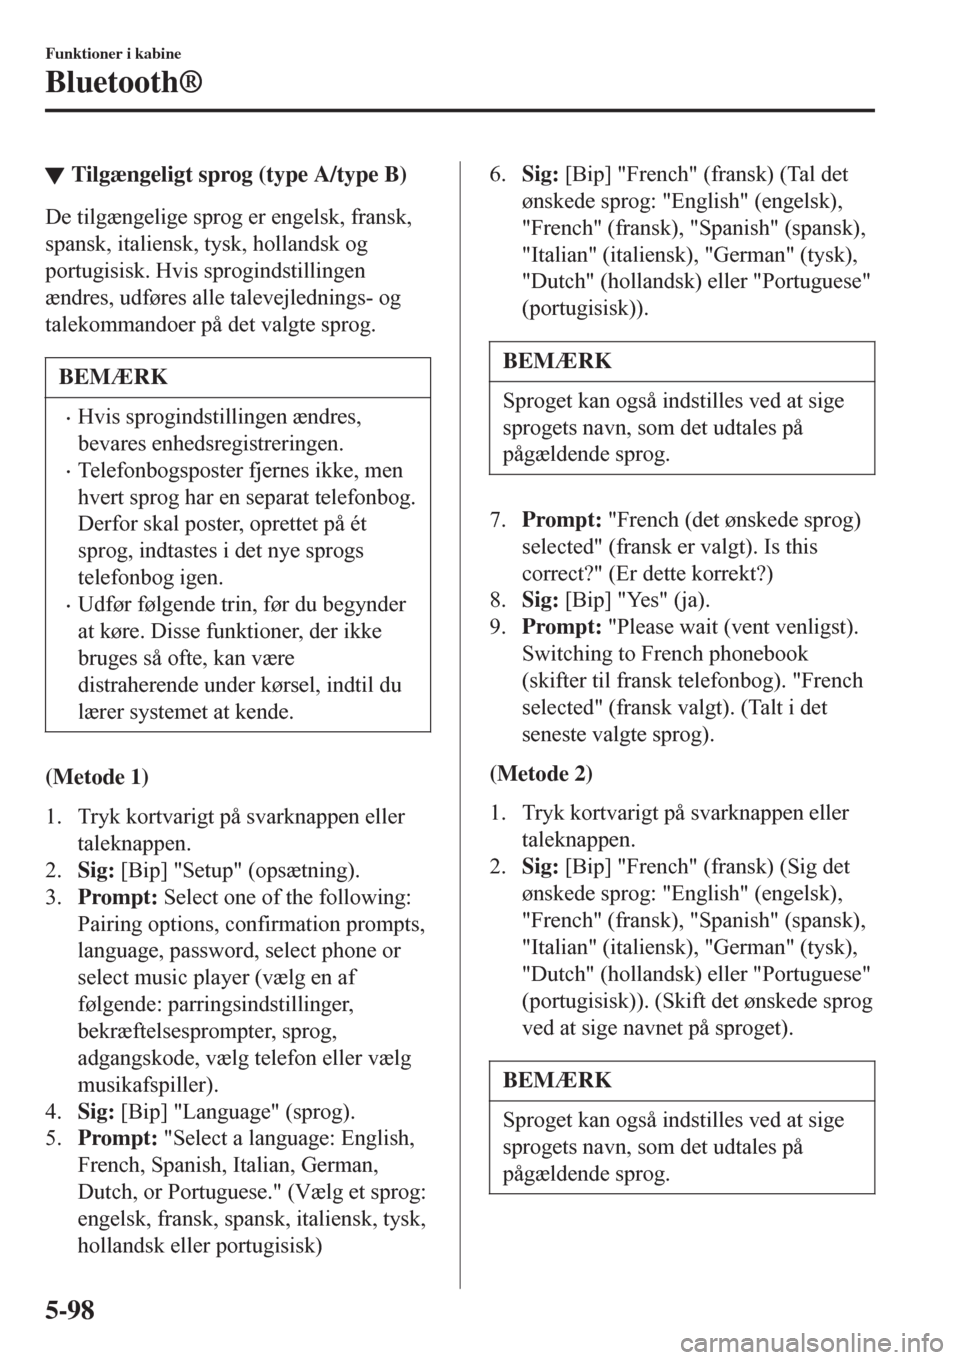 MAZDA MODEL CX-3 2016   Instruktionsbog (in Danish)  tTilgængeligt sprog (type A/type B)
De tilgængelige sprog er engelsk, fransk,
spansk, italiensk, tysk, hollandsk og
portugisisk. Hvis sprogindstillingen
ændres, udføres alle talevejlednings- og
ta